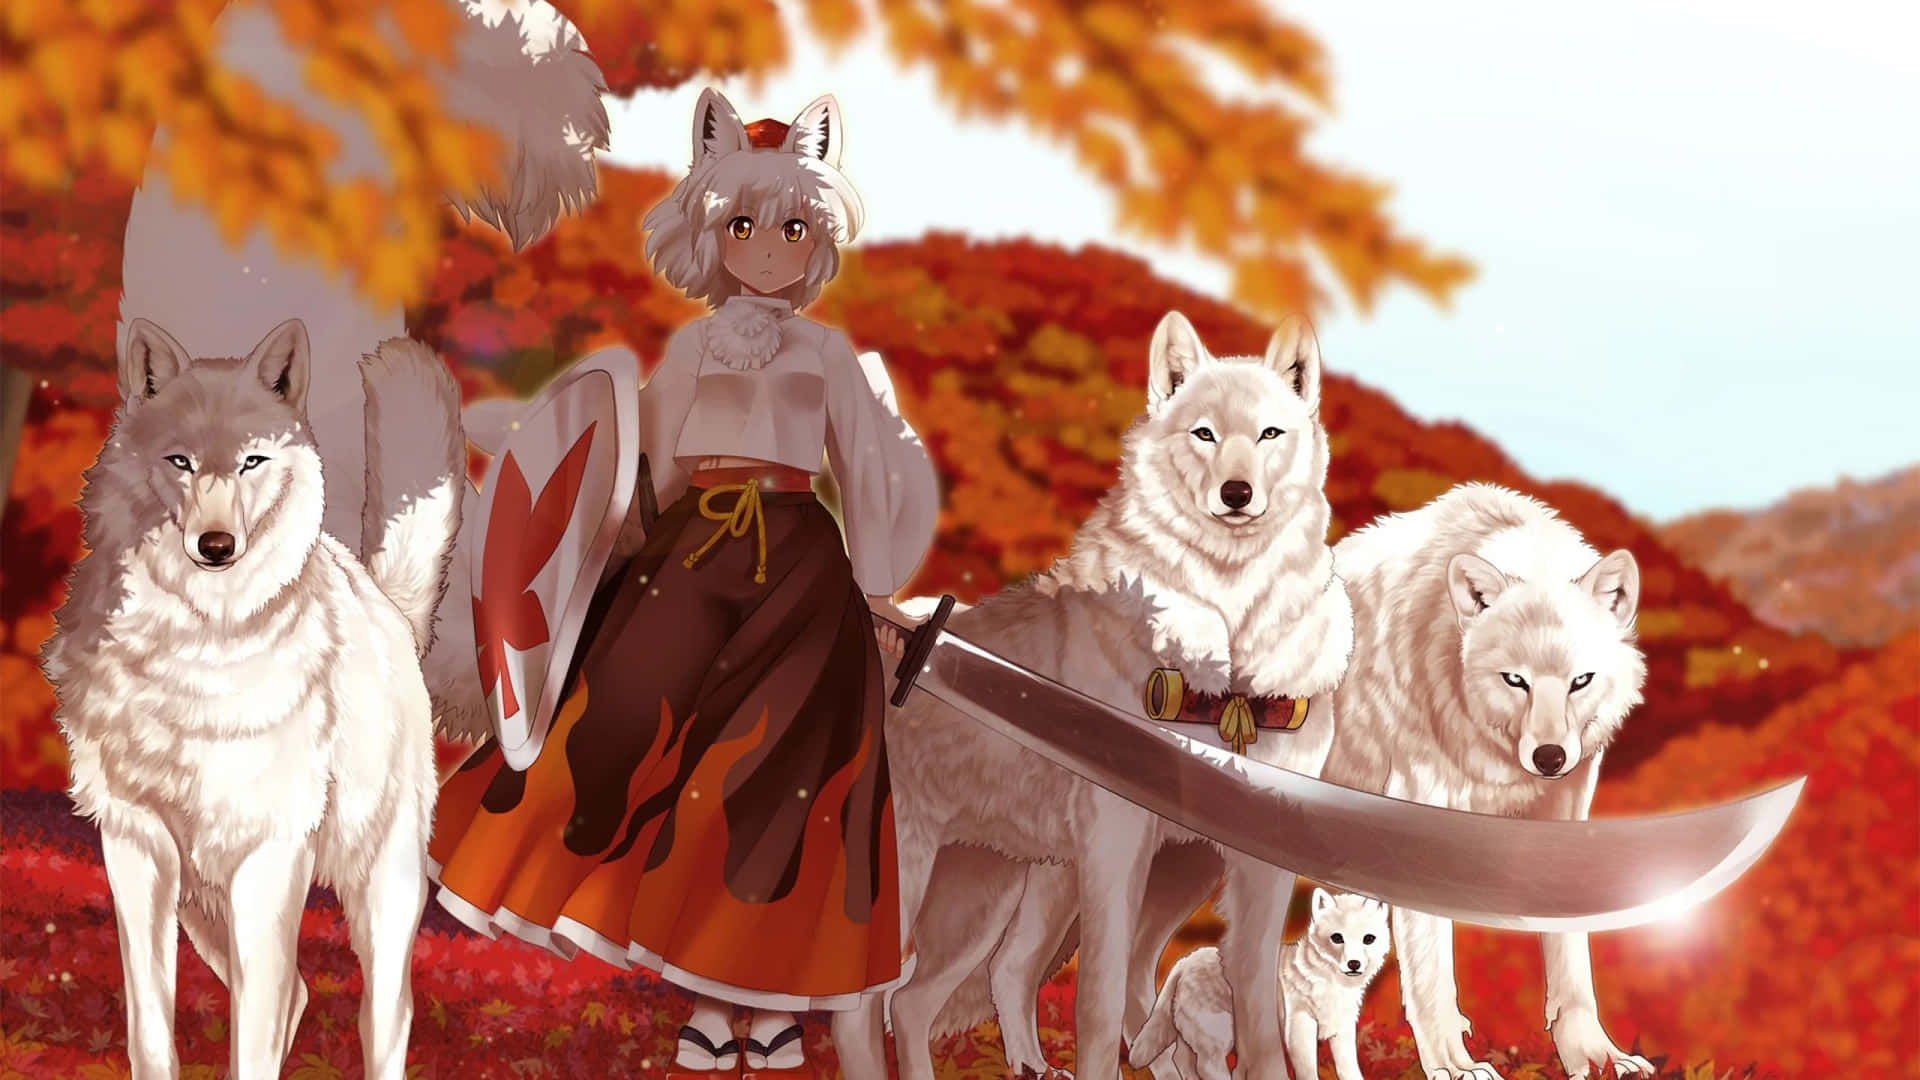 Sød lille anime ulv pige nyder foråret. Wallpaper